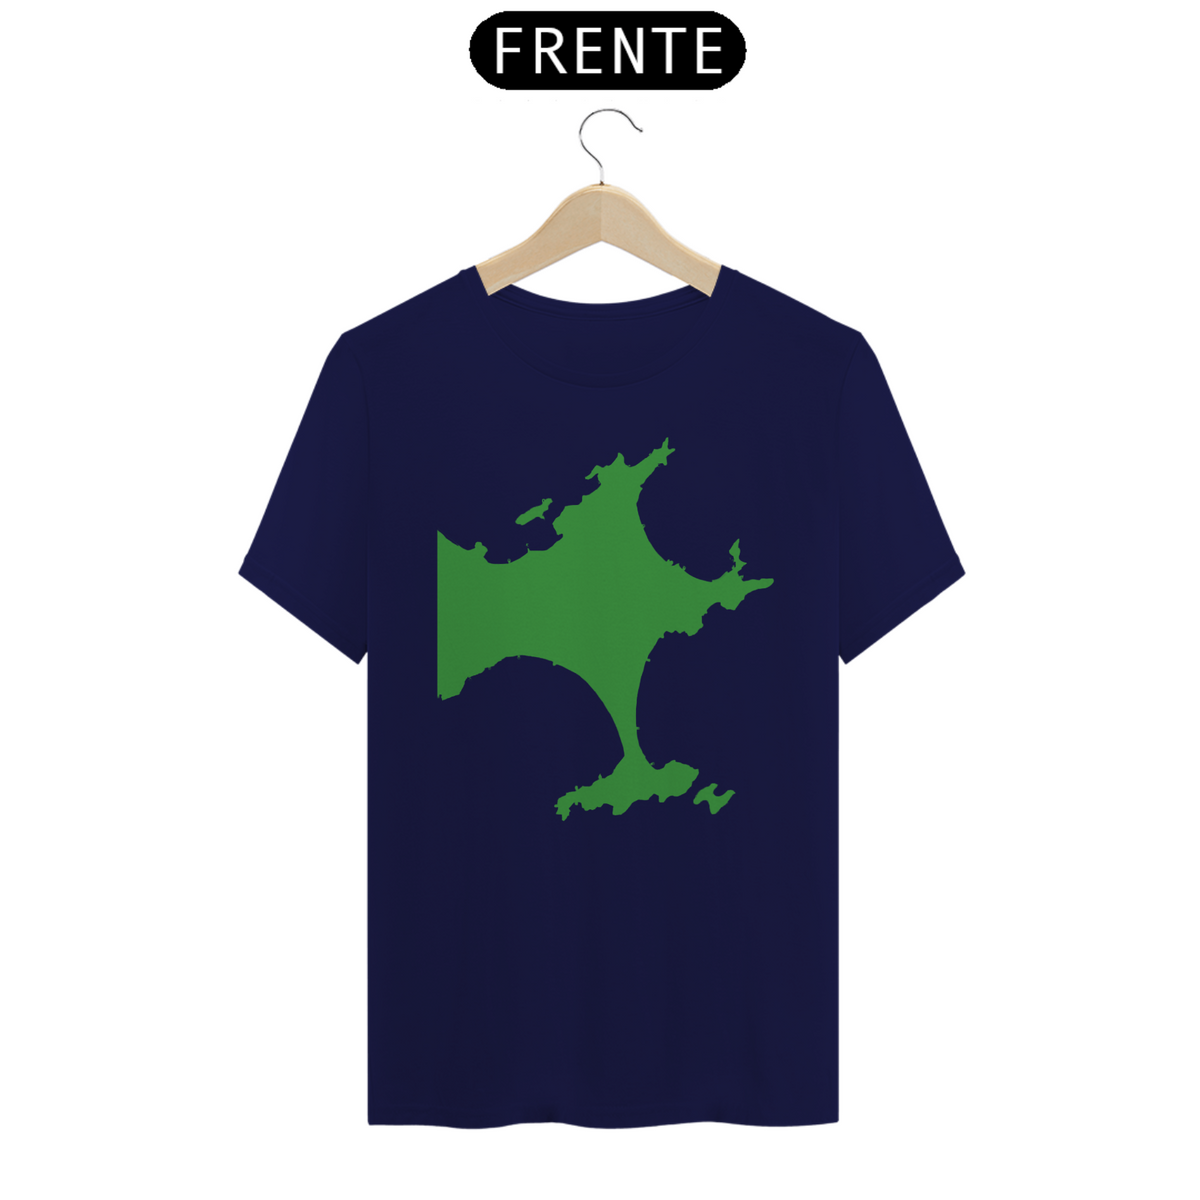 Nome do produto: Camiseta mapa bbs verde